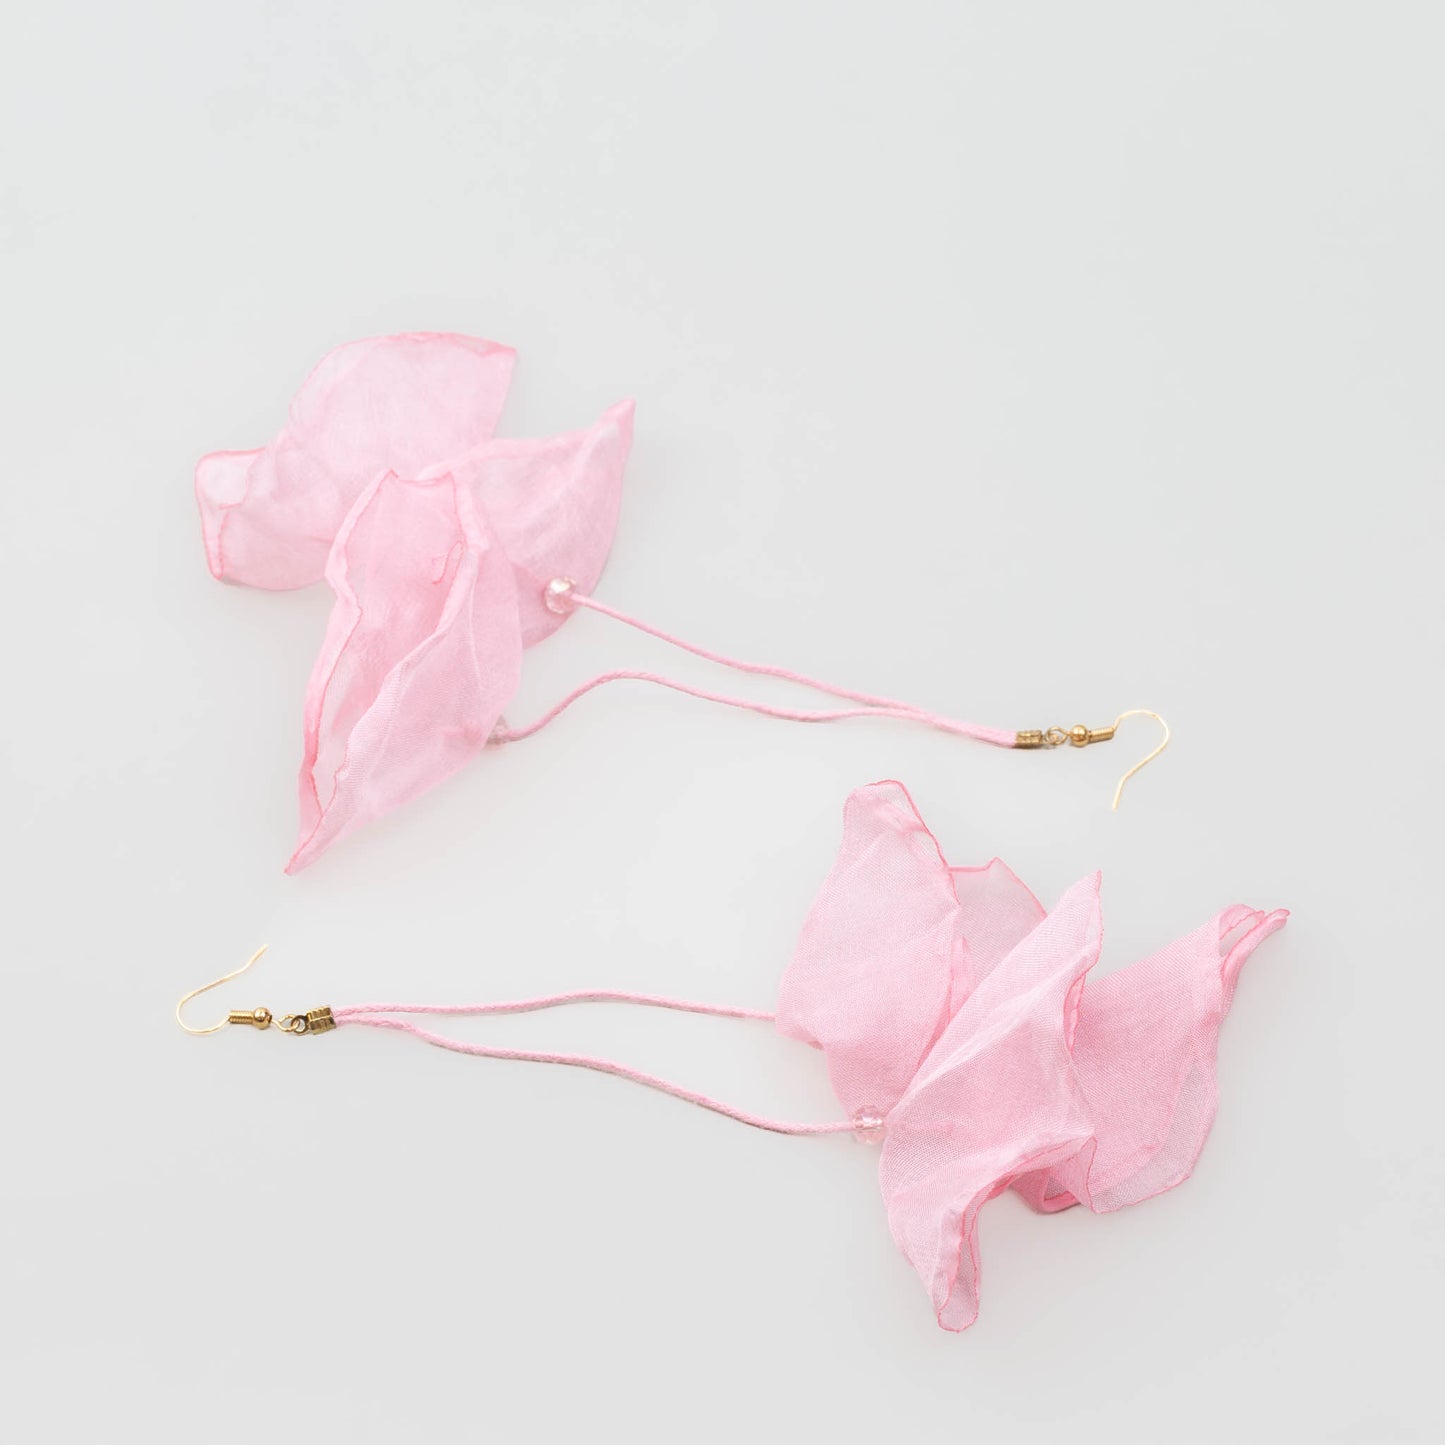 Cercei extra lungi și ușori cu petale delicate din material textil - Roz